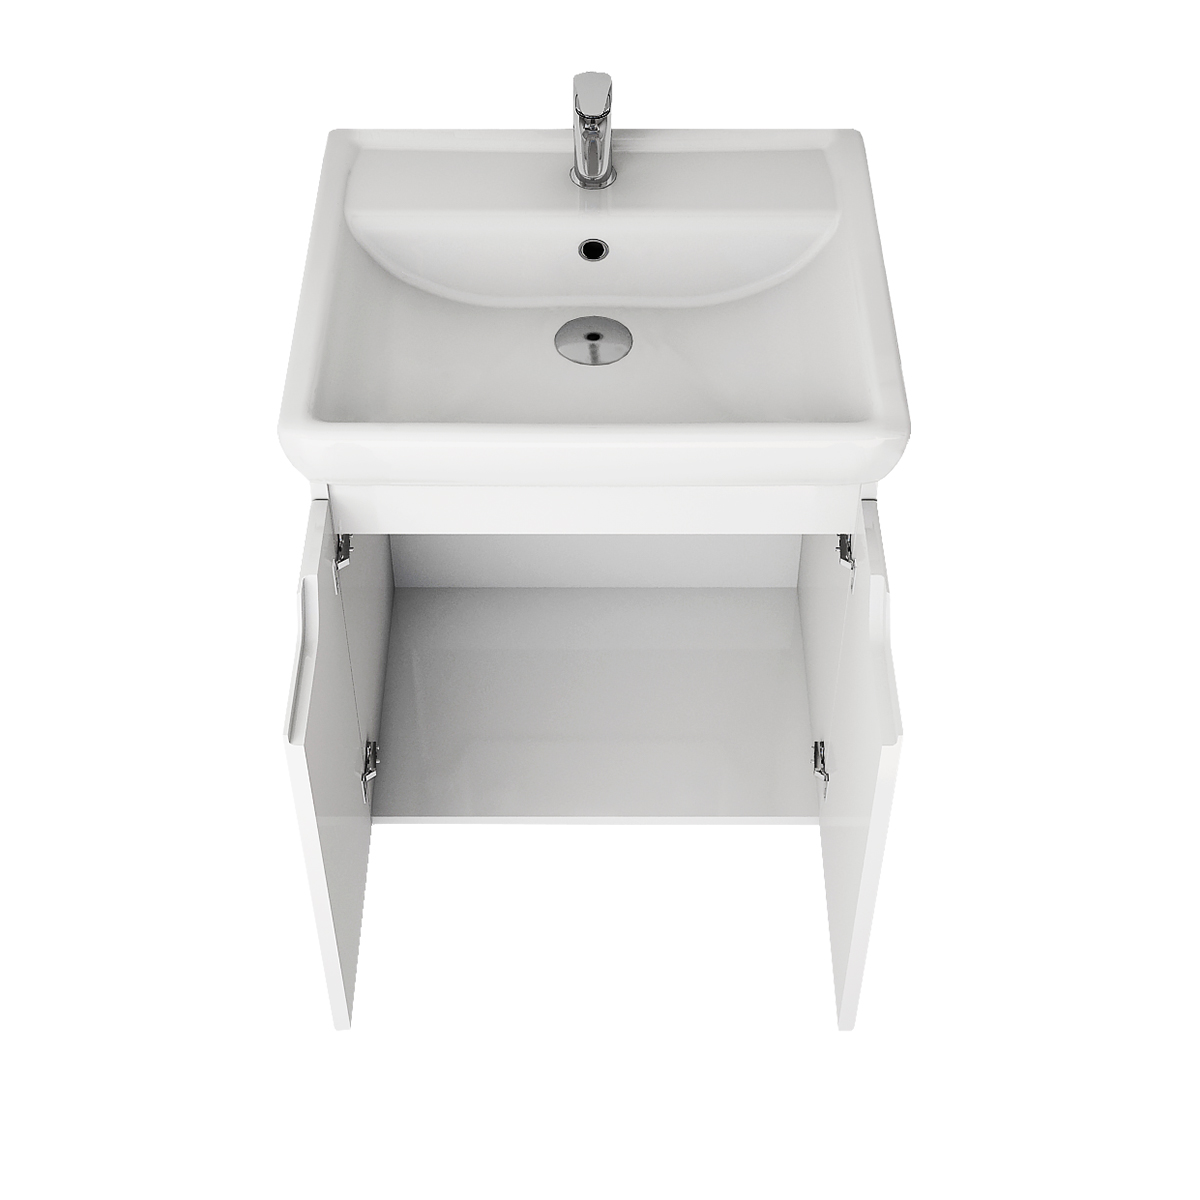 Мебель для ванной Dreja Q 55 см с дверцами, белый